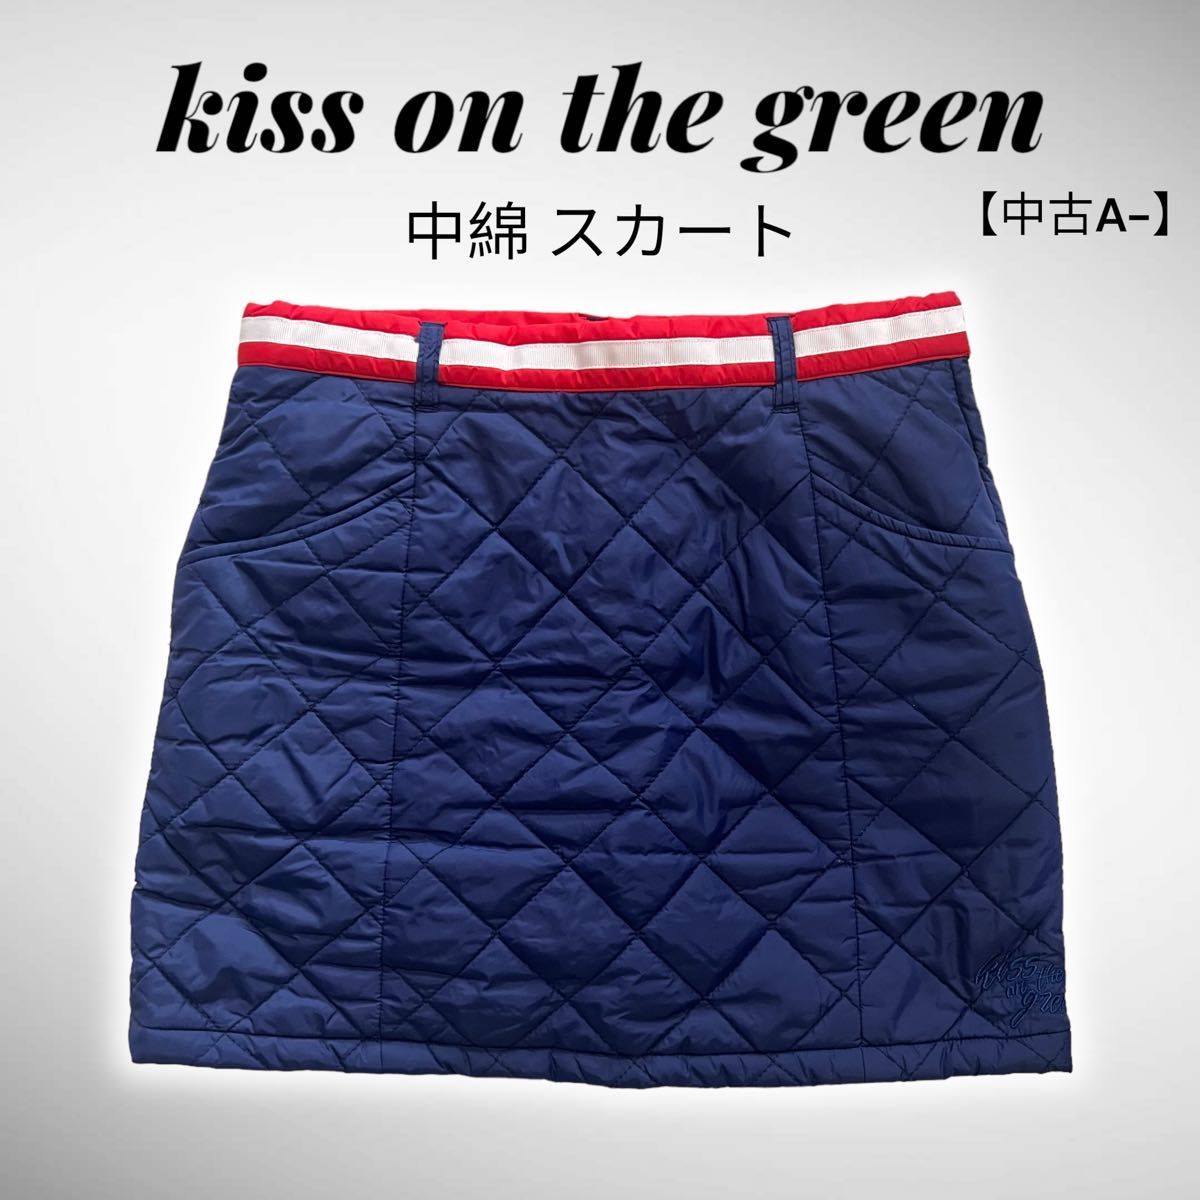 レディース kiss on the green 中綿 スカート サイズ2 秋冬  キルティング ゴルフウェア キスオンザグリーン